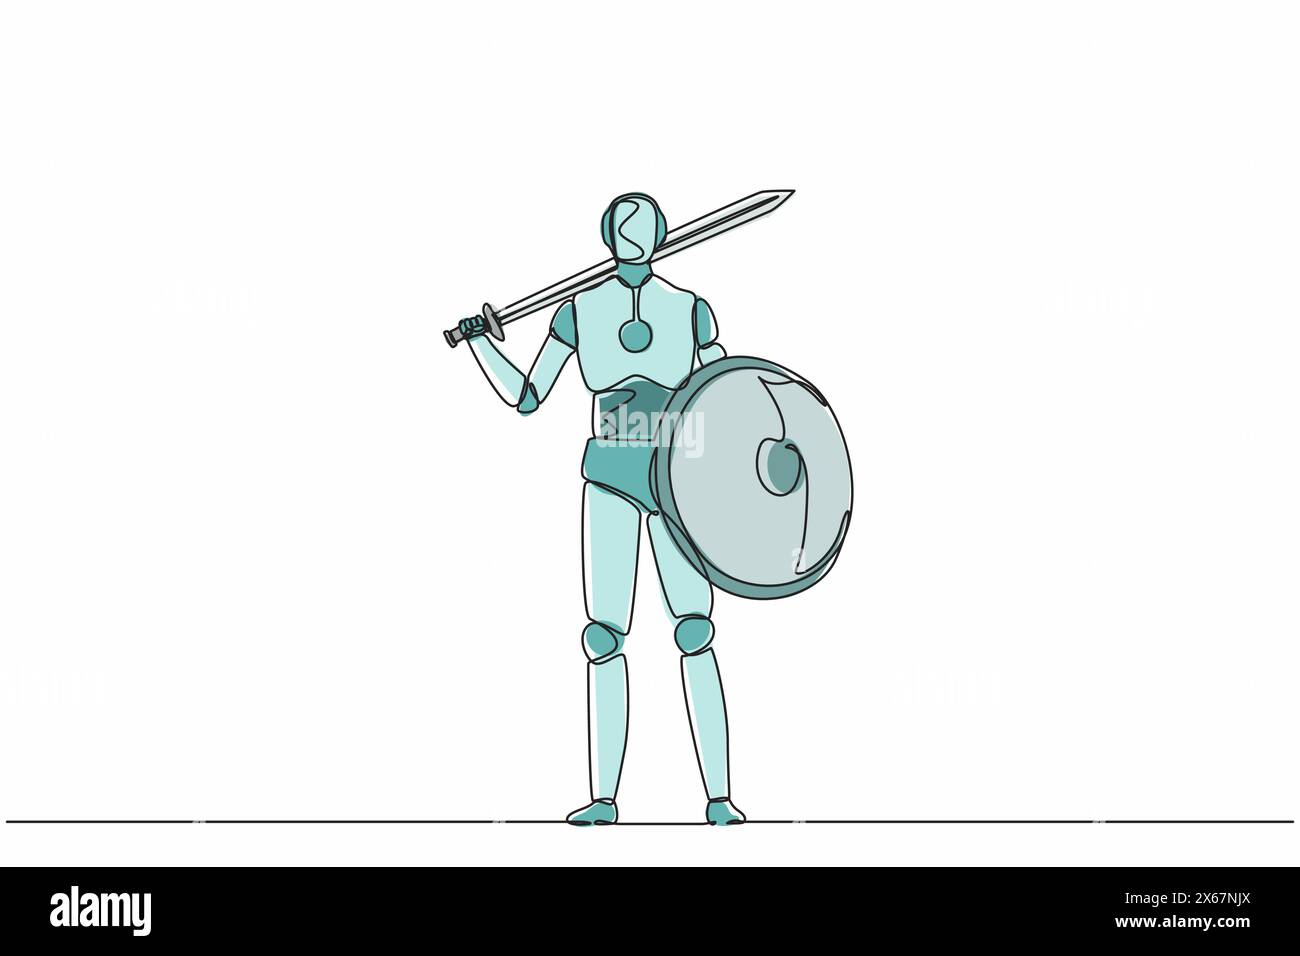 Robots dessinant une seule ligne continue debout tenant une épée et un bouclier. Technologie moderne d'intelligence artificielle robotique. Technologie électronique ind Illustration de Vecteur